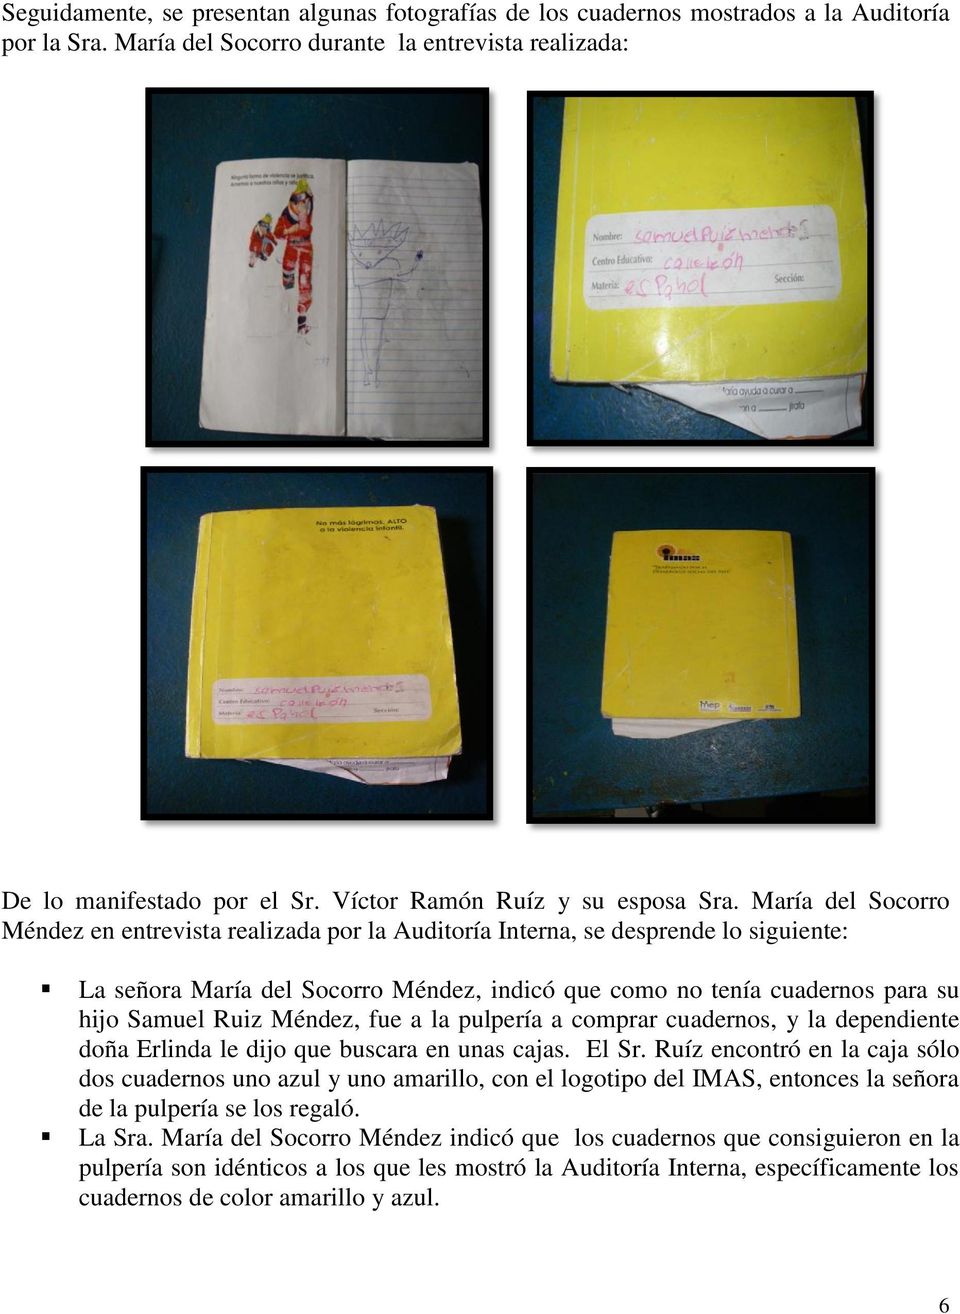 María del Socorro Méndez en entrevista realizada por la Auditoría Interna, se desprende lo siguiente: La señora María del Socorro Méndez, indicó que como no tenía cuadernos para su hijo Samuel Ruiz